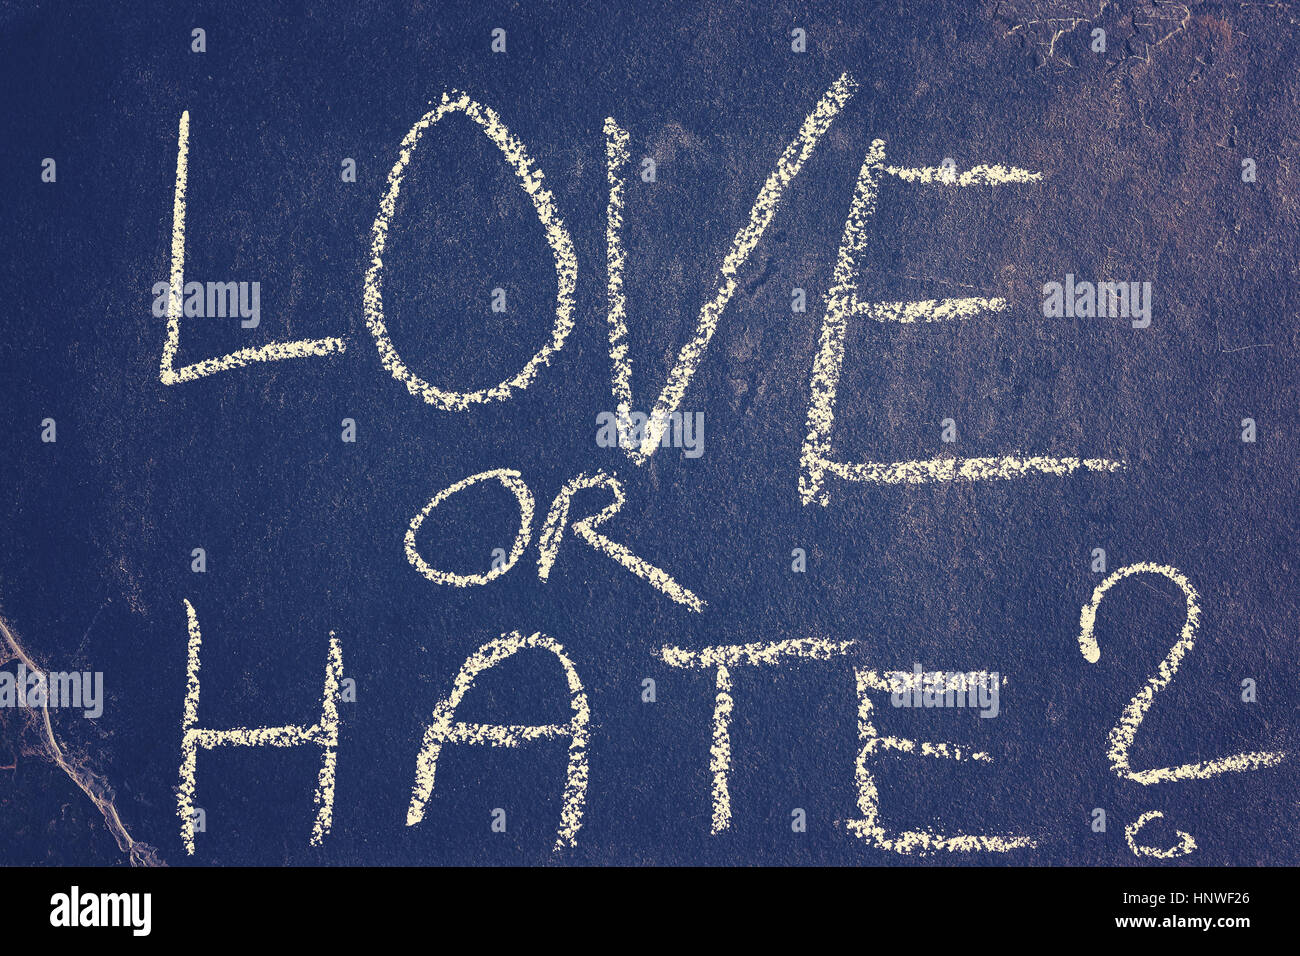 Liebe oder hasse Kreidezeichnung, straffende angewandte, konzeptionelle Bild Farbe. Stockfoto